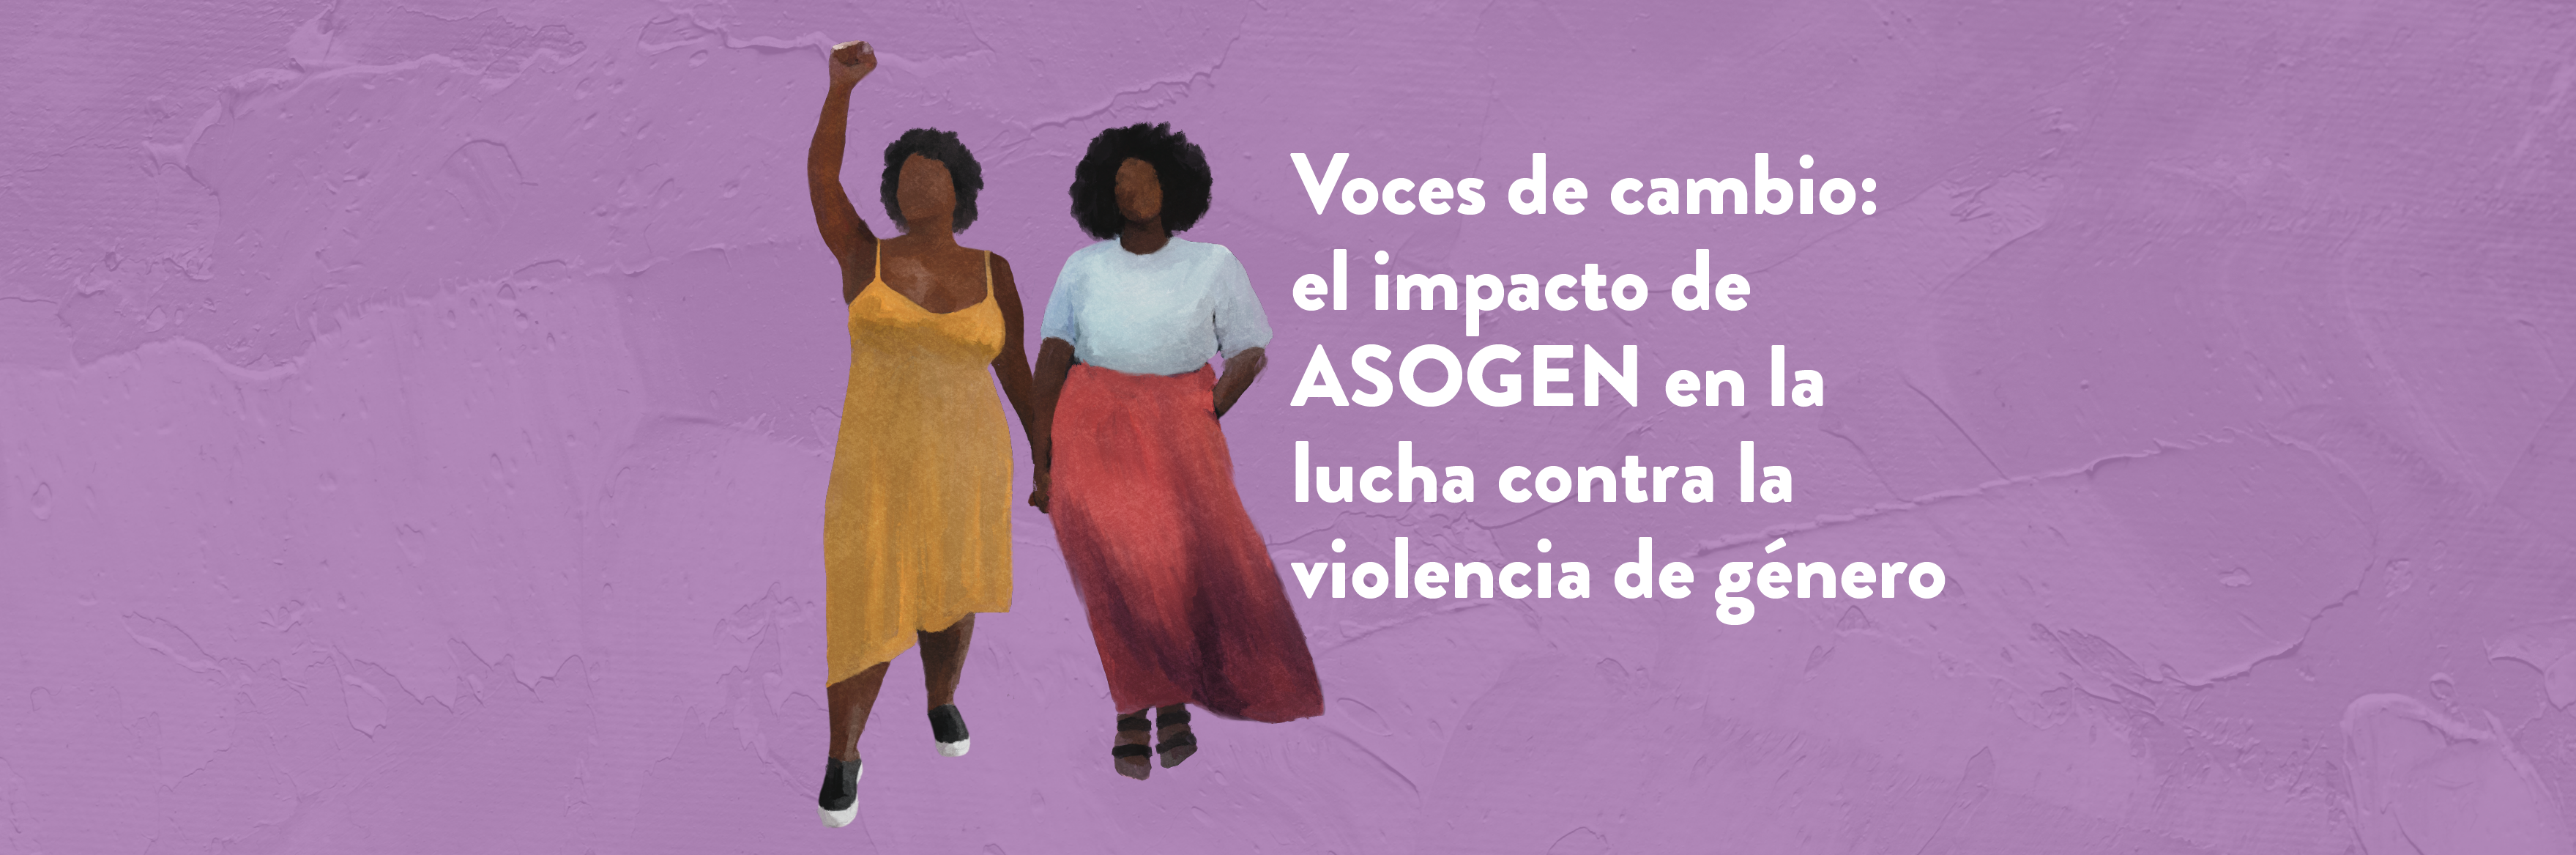 Voces de cambio: el impacto de ASOGEN en la lucha contra la violencia de género 